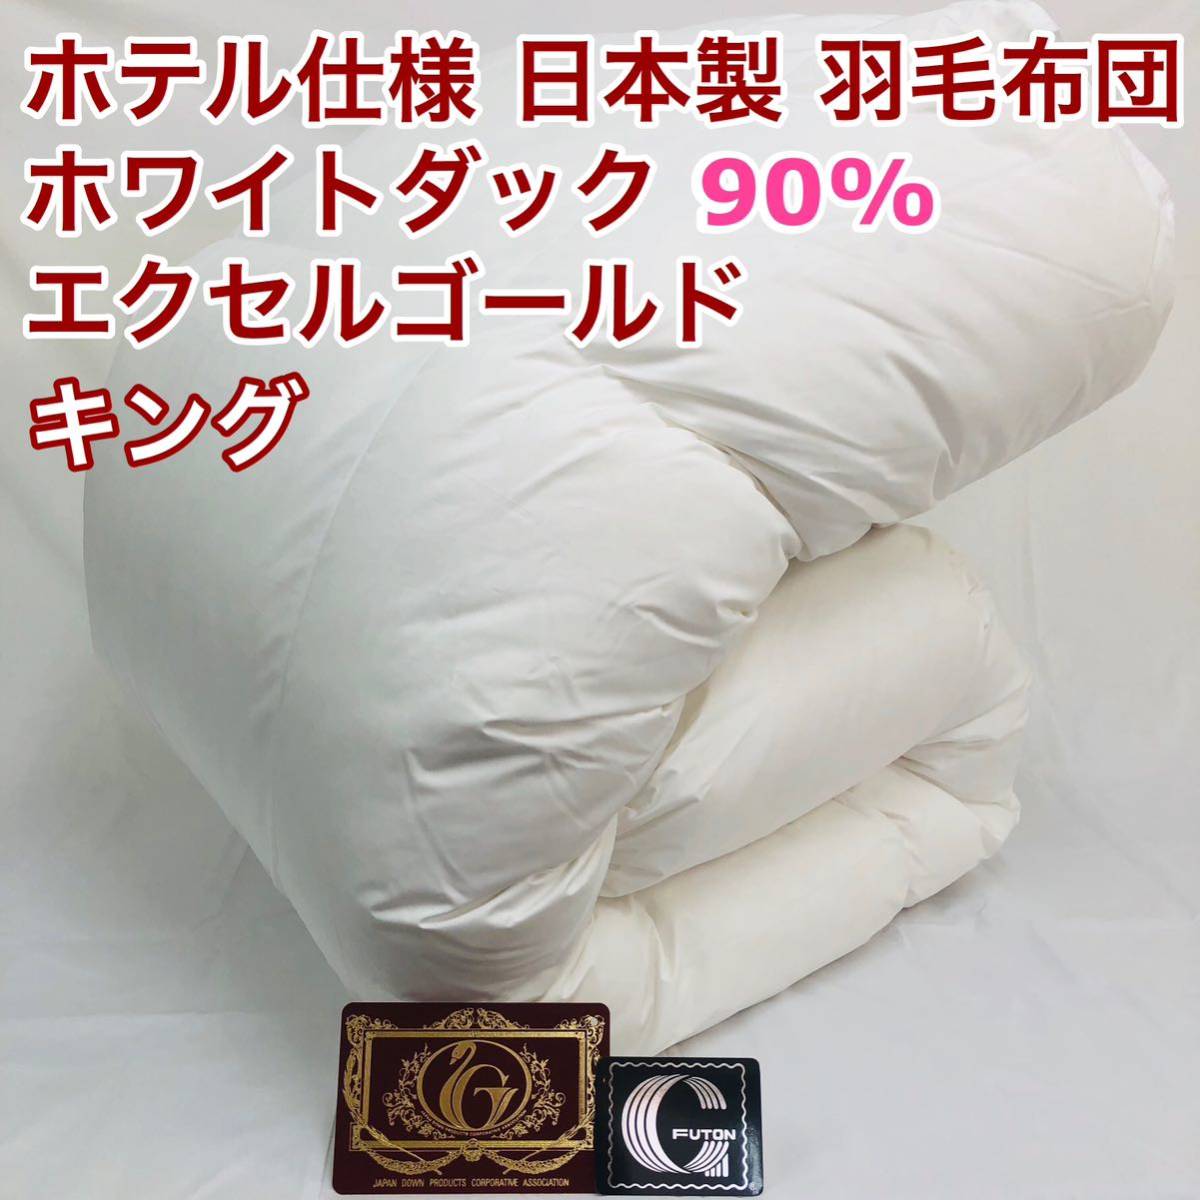 羽毛布団 キング ホワイトダック90% 日本製 エクセルゴールド